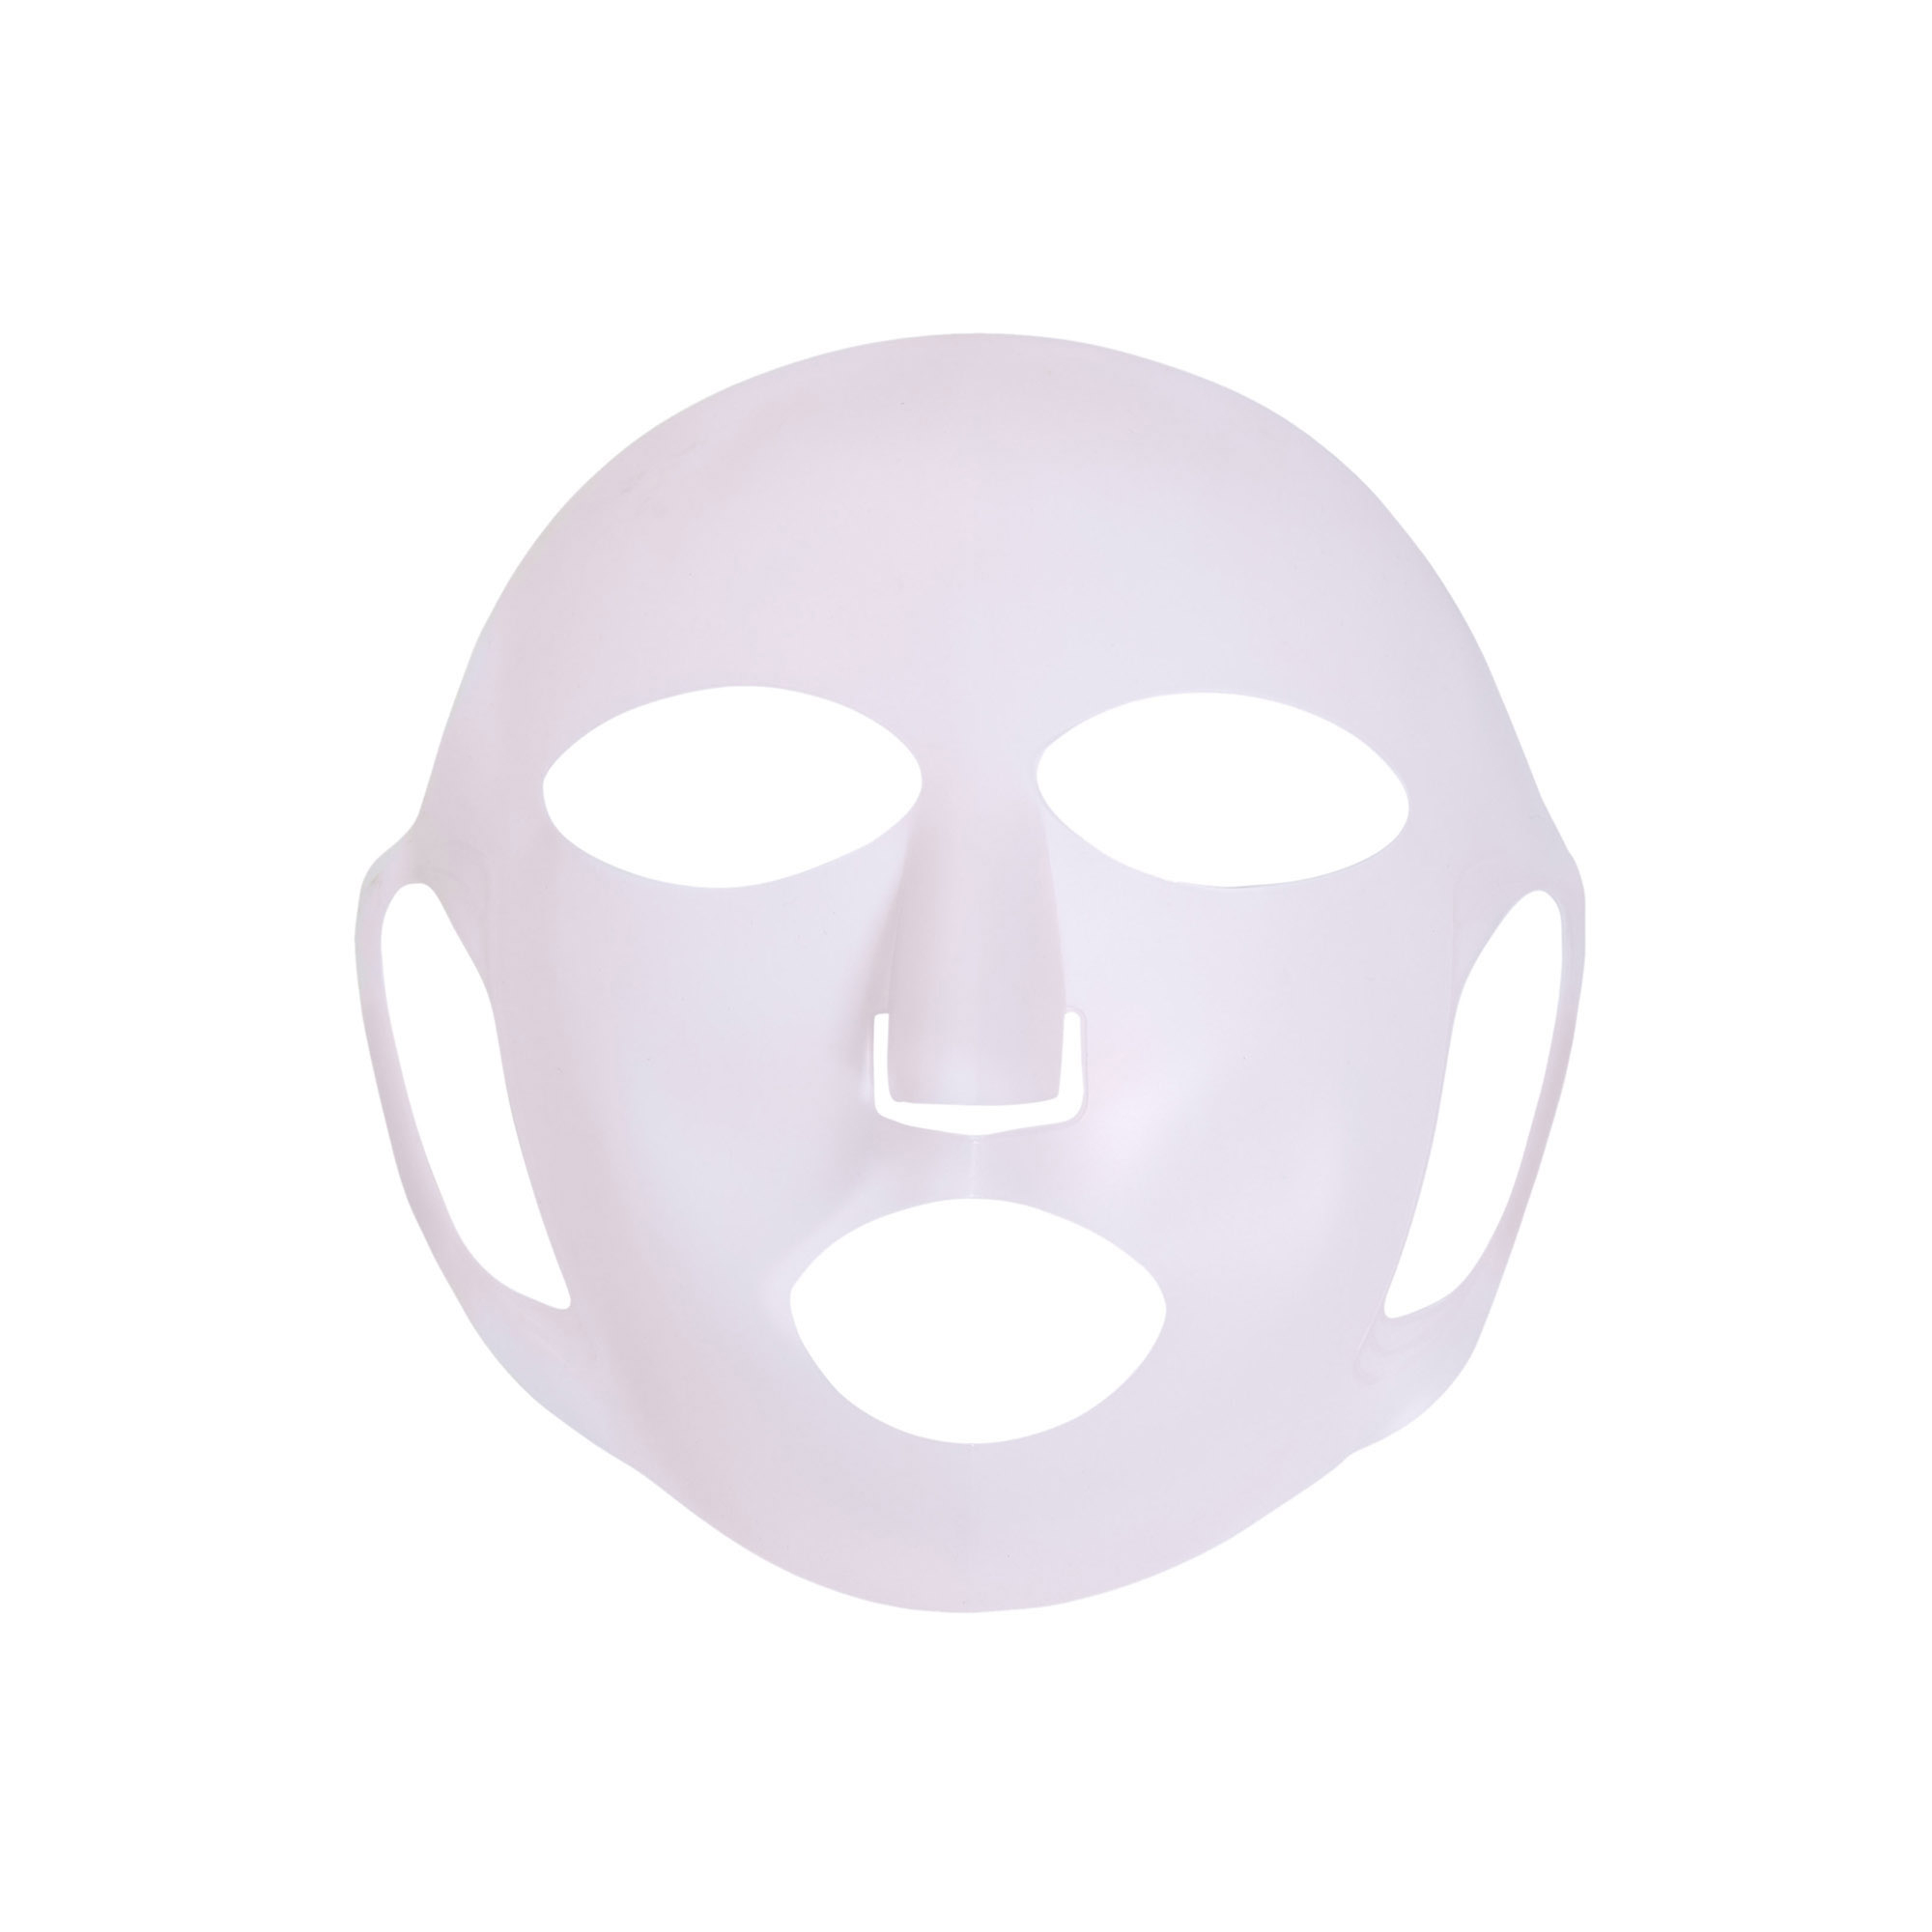 Honest Beauty Reusable Magic Silicone Sheet Mask